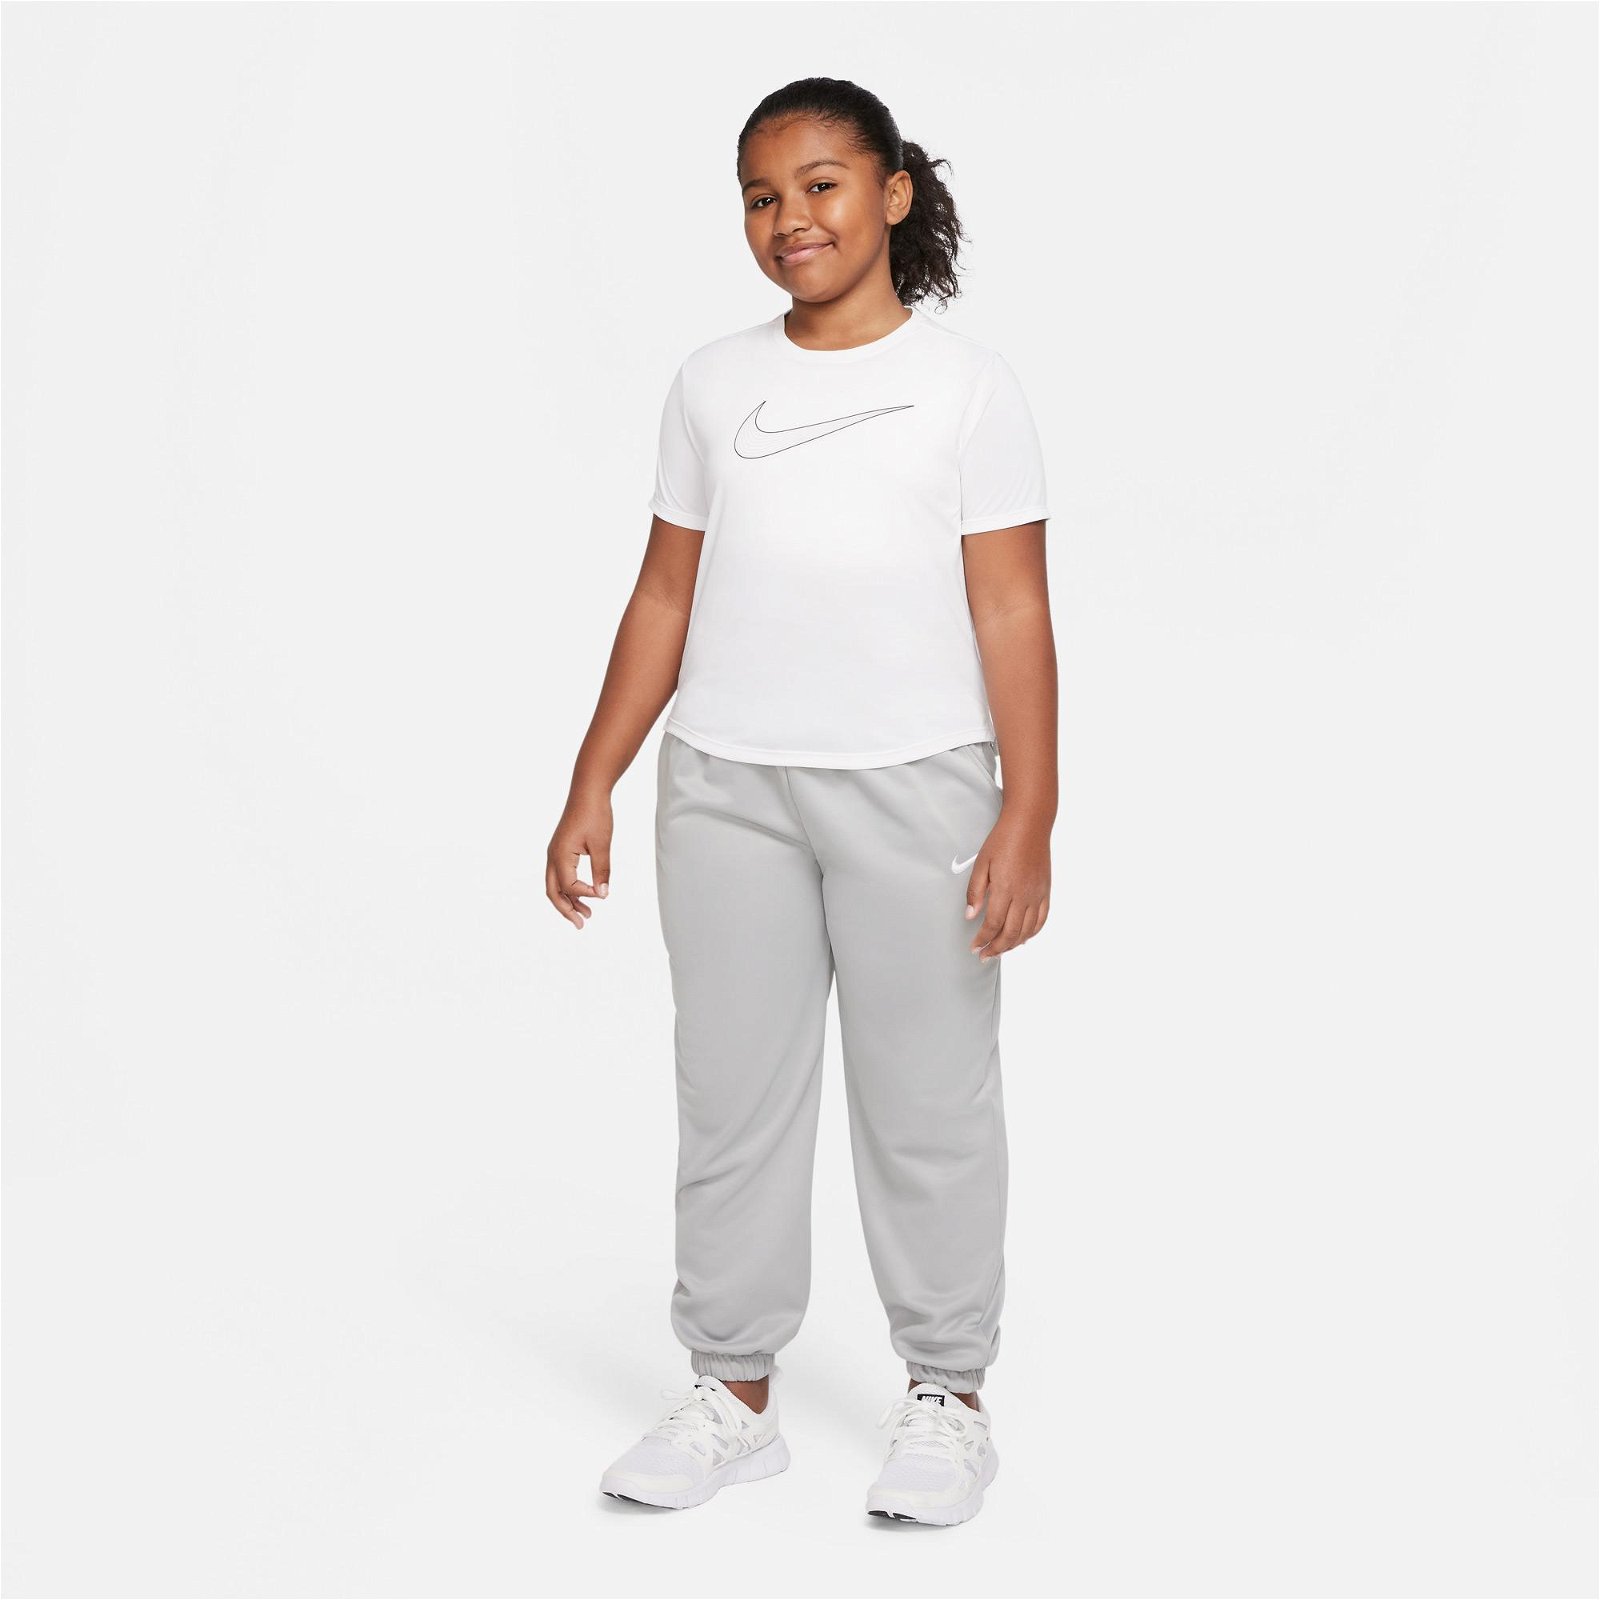 Nike Dri-FIT One Top Gx Çocuk Beyaz T-Shirt